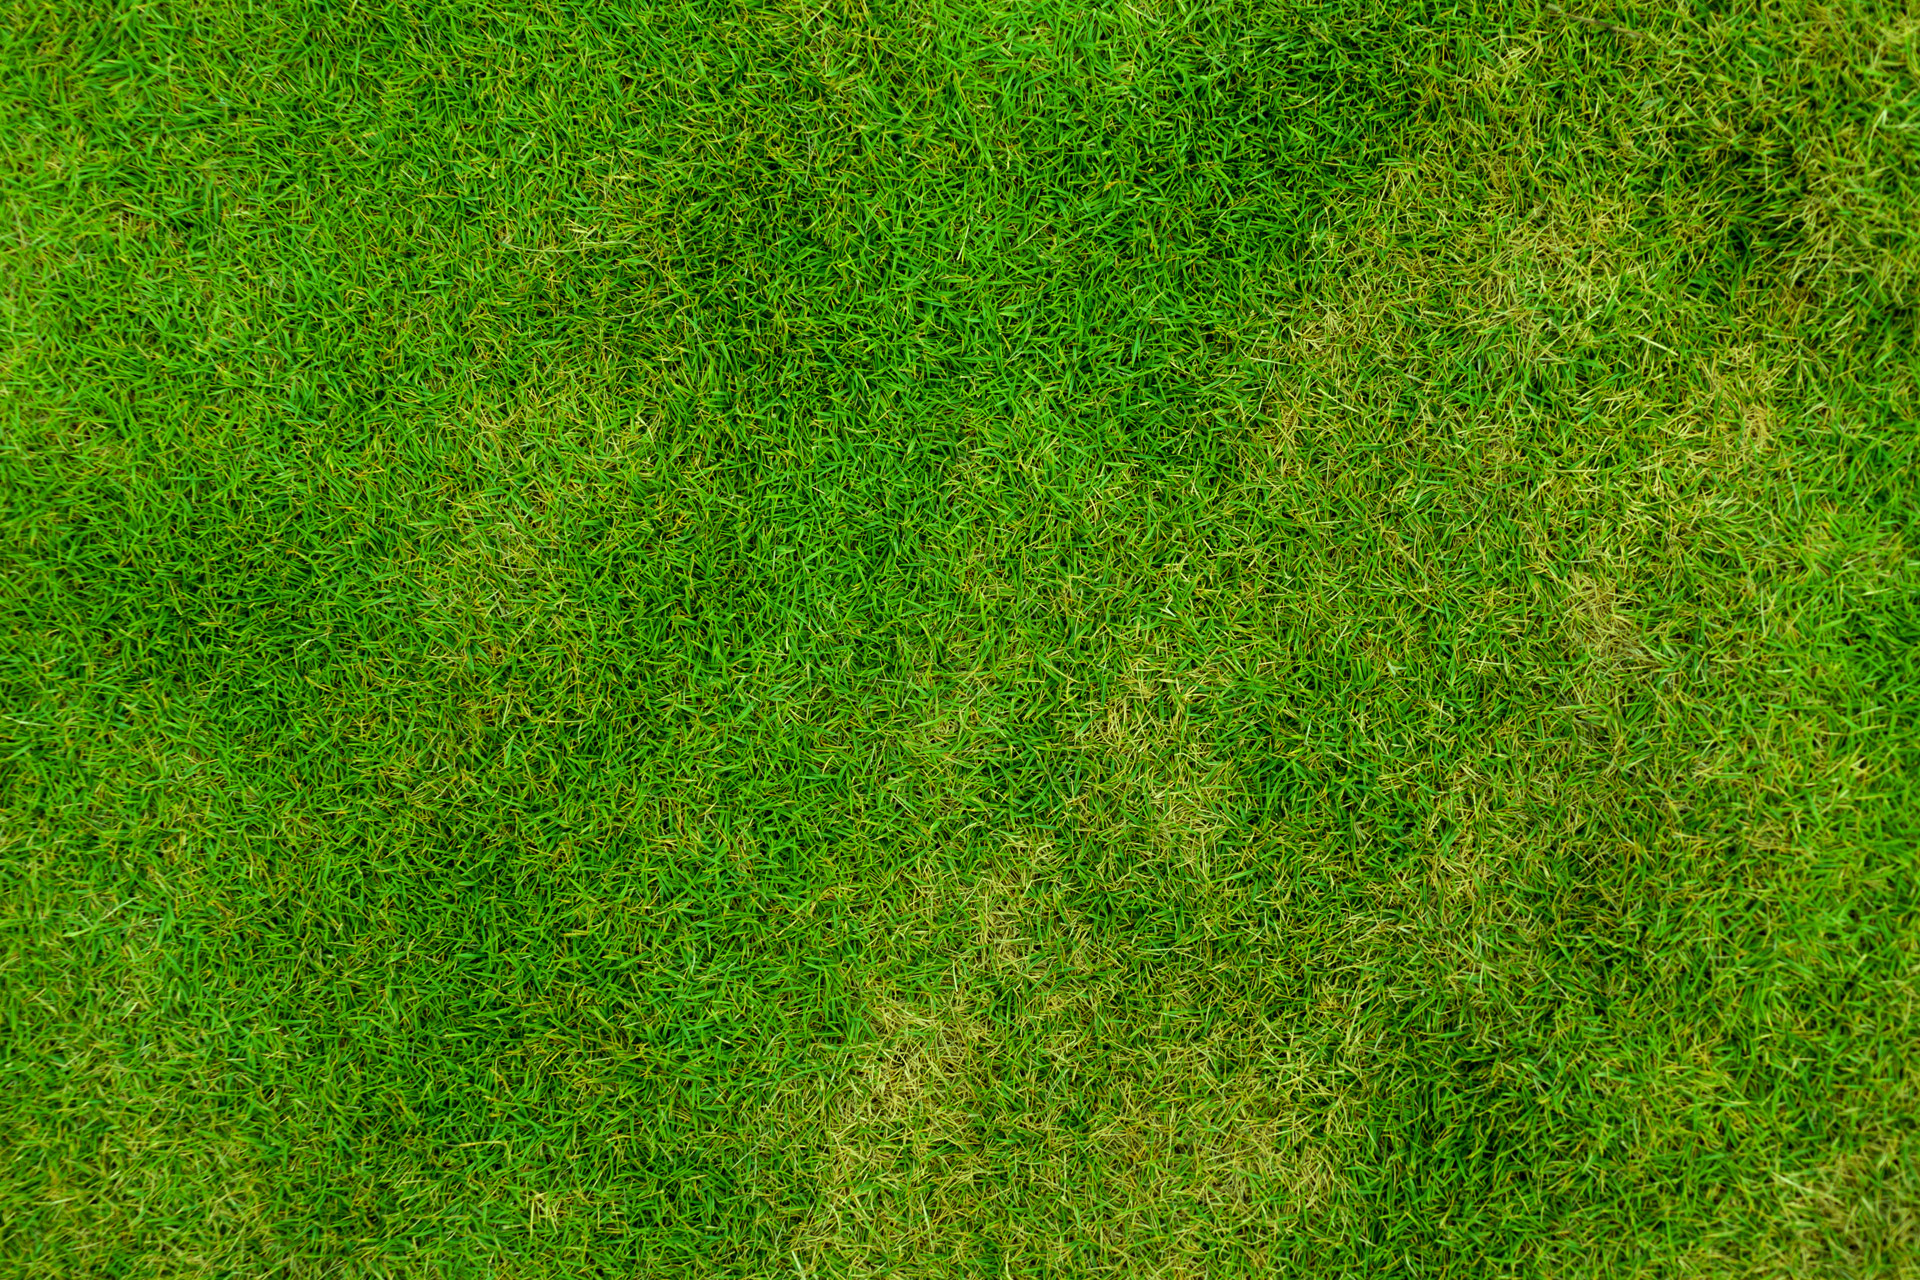 green grass texture, текстура зеленой травы, скачать фото, фон